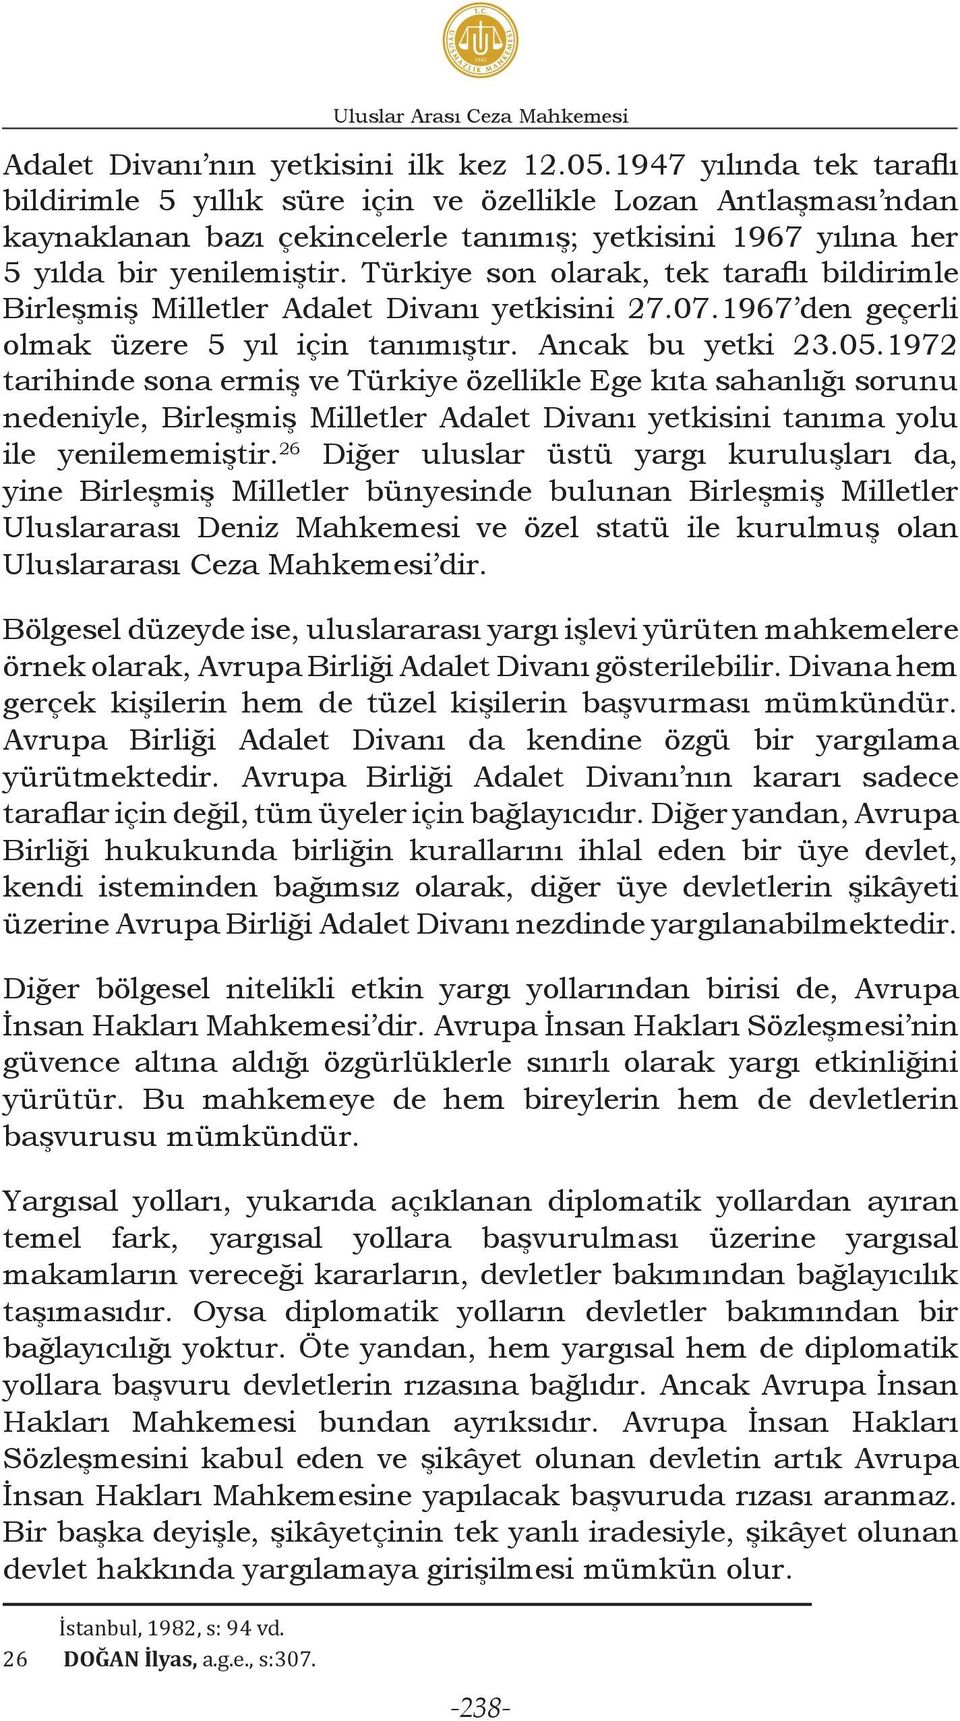 Türkiye son olarak, tek taraflı bildirimle Birleşmiş Milletler Adalet Divanı yetkisini 27.07.1967 den geçerli olmak üzere 5 yıl için tanımıştır. Ancak bu yetki 23.05.